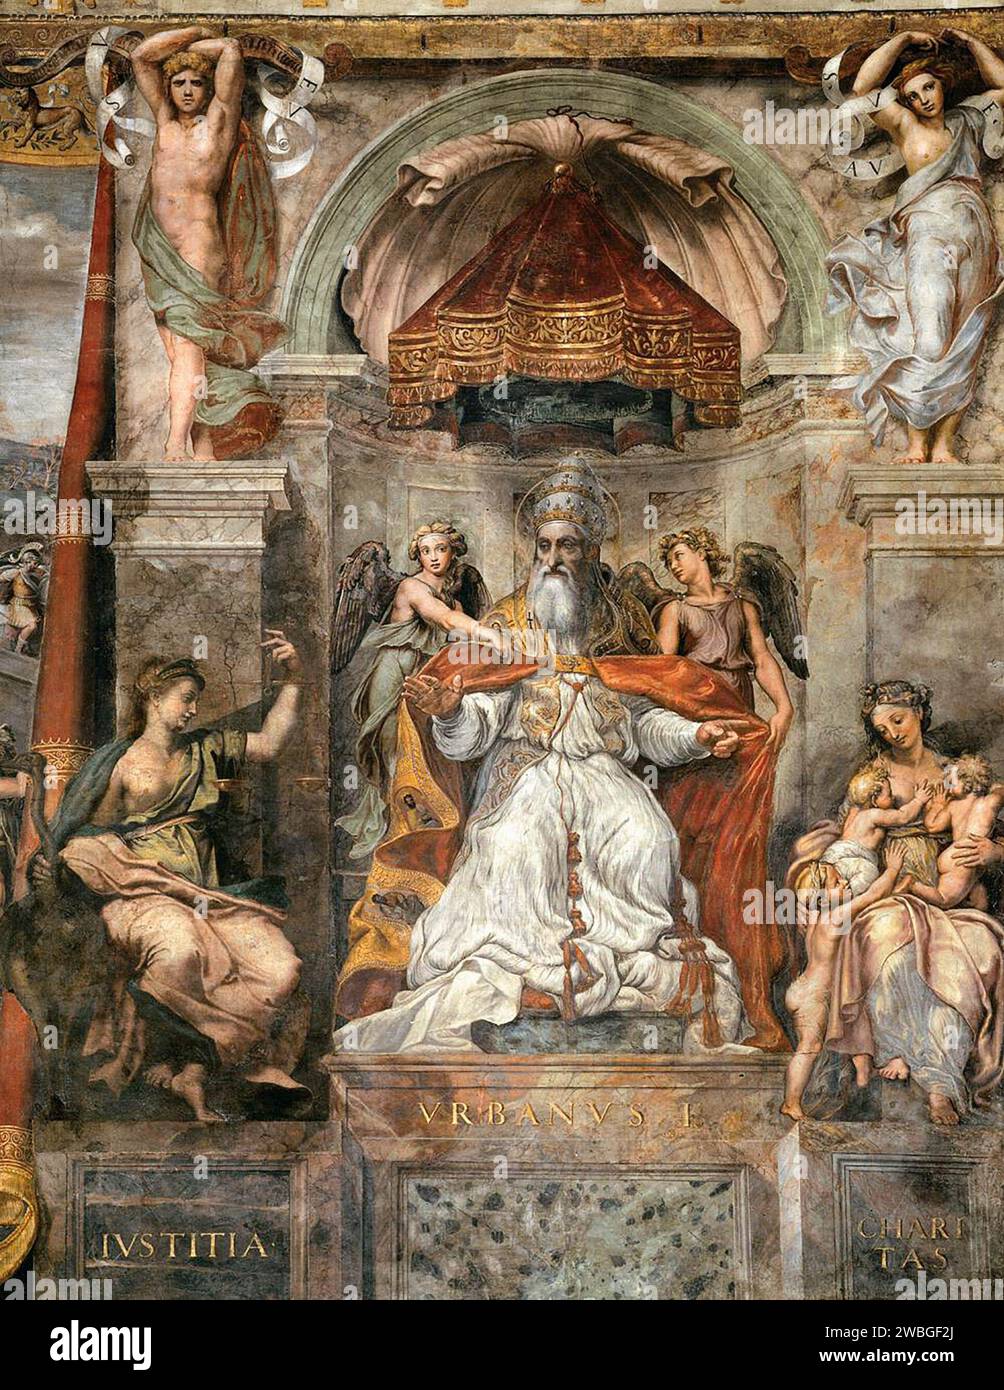 Une peinture du pape urbain I (peint par Raphaël vers 1520) qui fut pontife de AD22 à AD230. Il était le dix-septième pape et a longtemps été considéré comme martyrisé, mais une analyse plus récente suggère qu'il est mort d'une mort naturelle. Banque D'Images